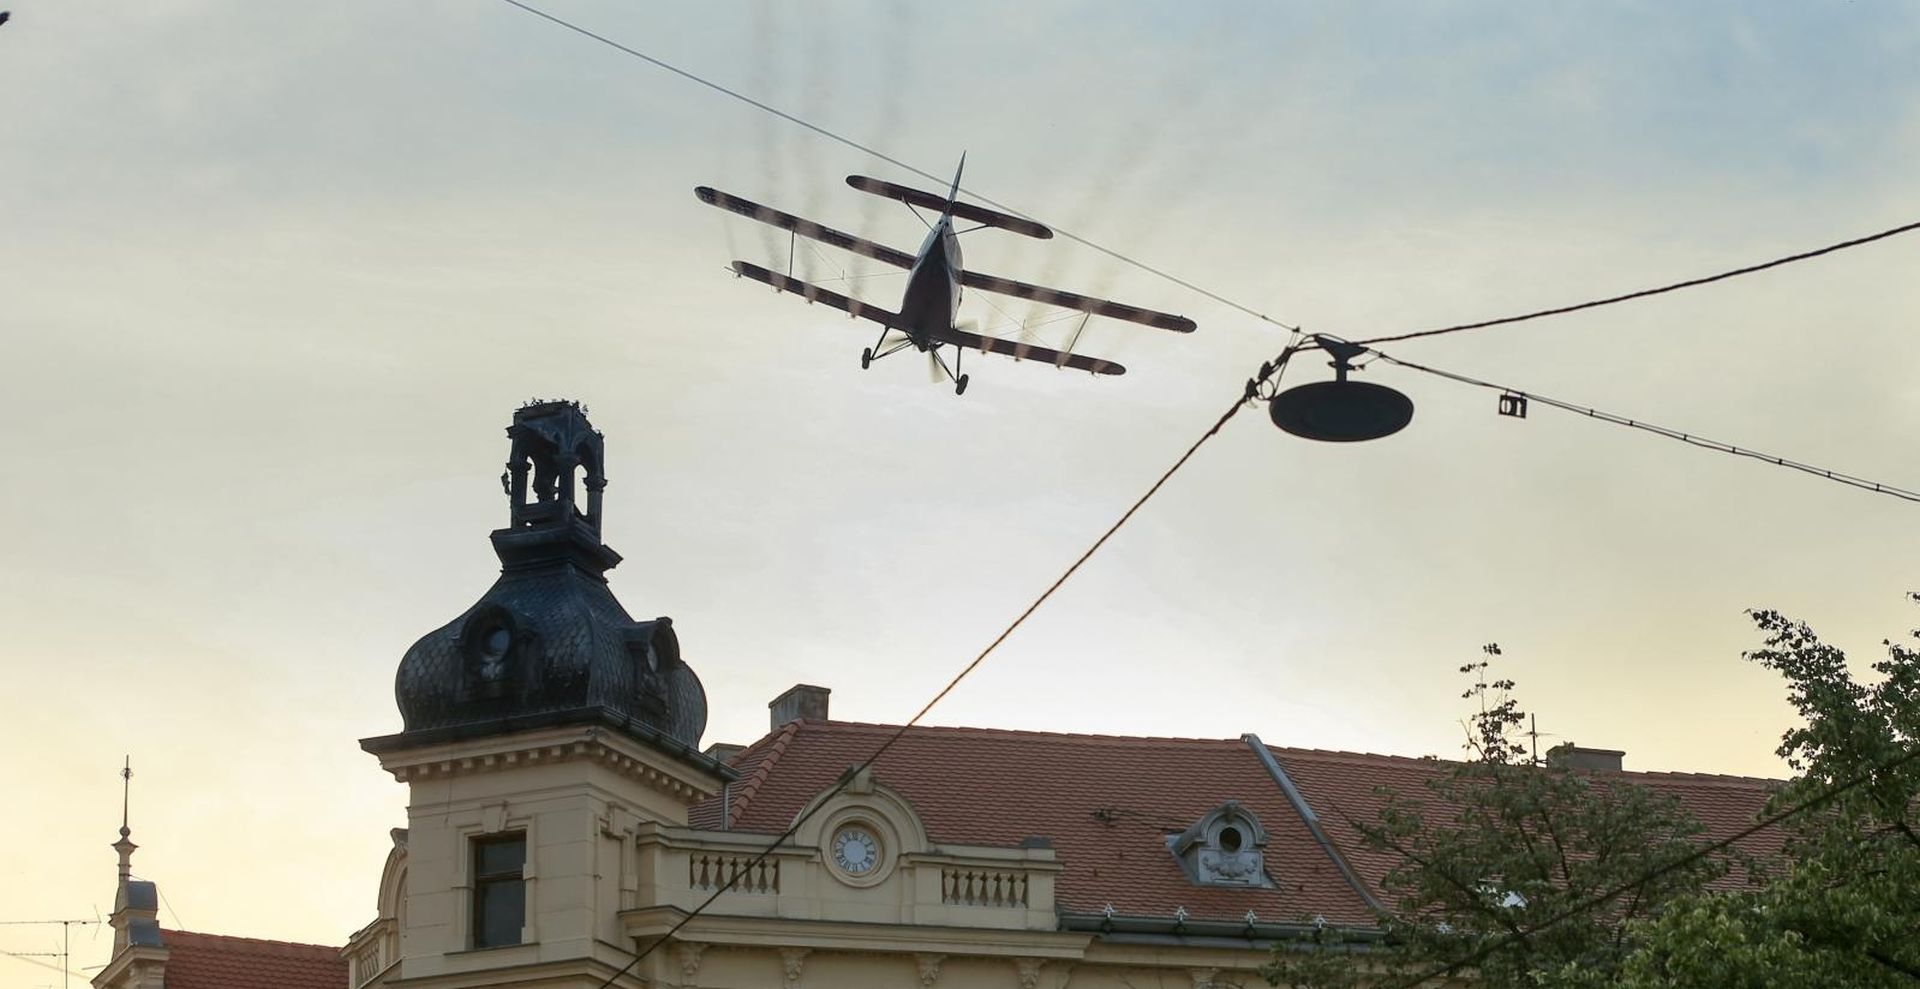 27.06.2019., Osijek - Danas je drugi dan tretiranja komaraca iz aviona koji su zaprasivali rubne dijelove Osijeka. Photo: Dubravka Petric/PIXSELL